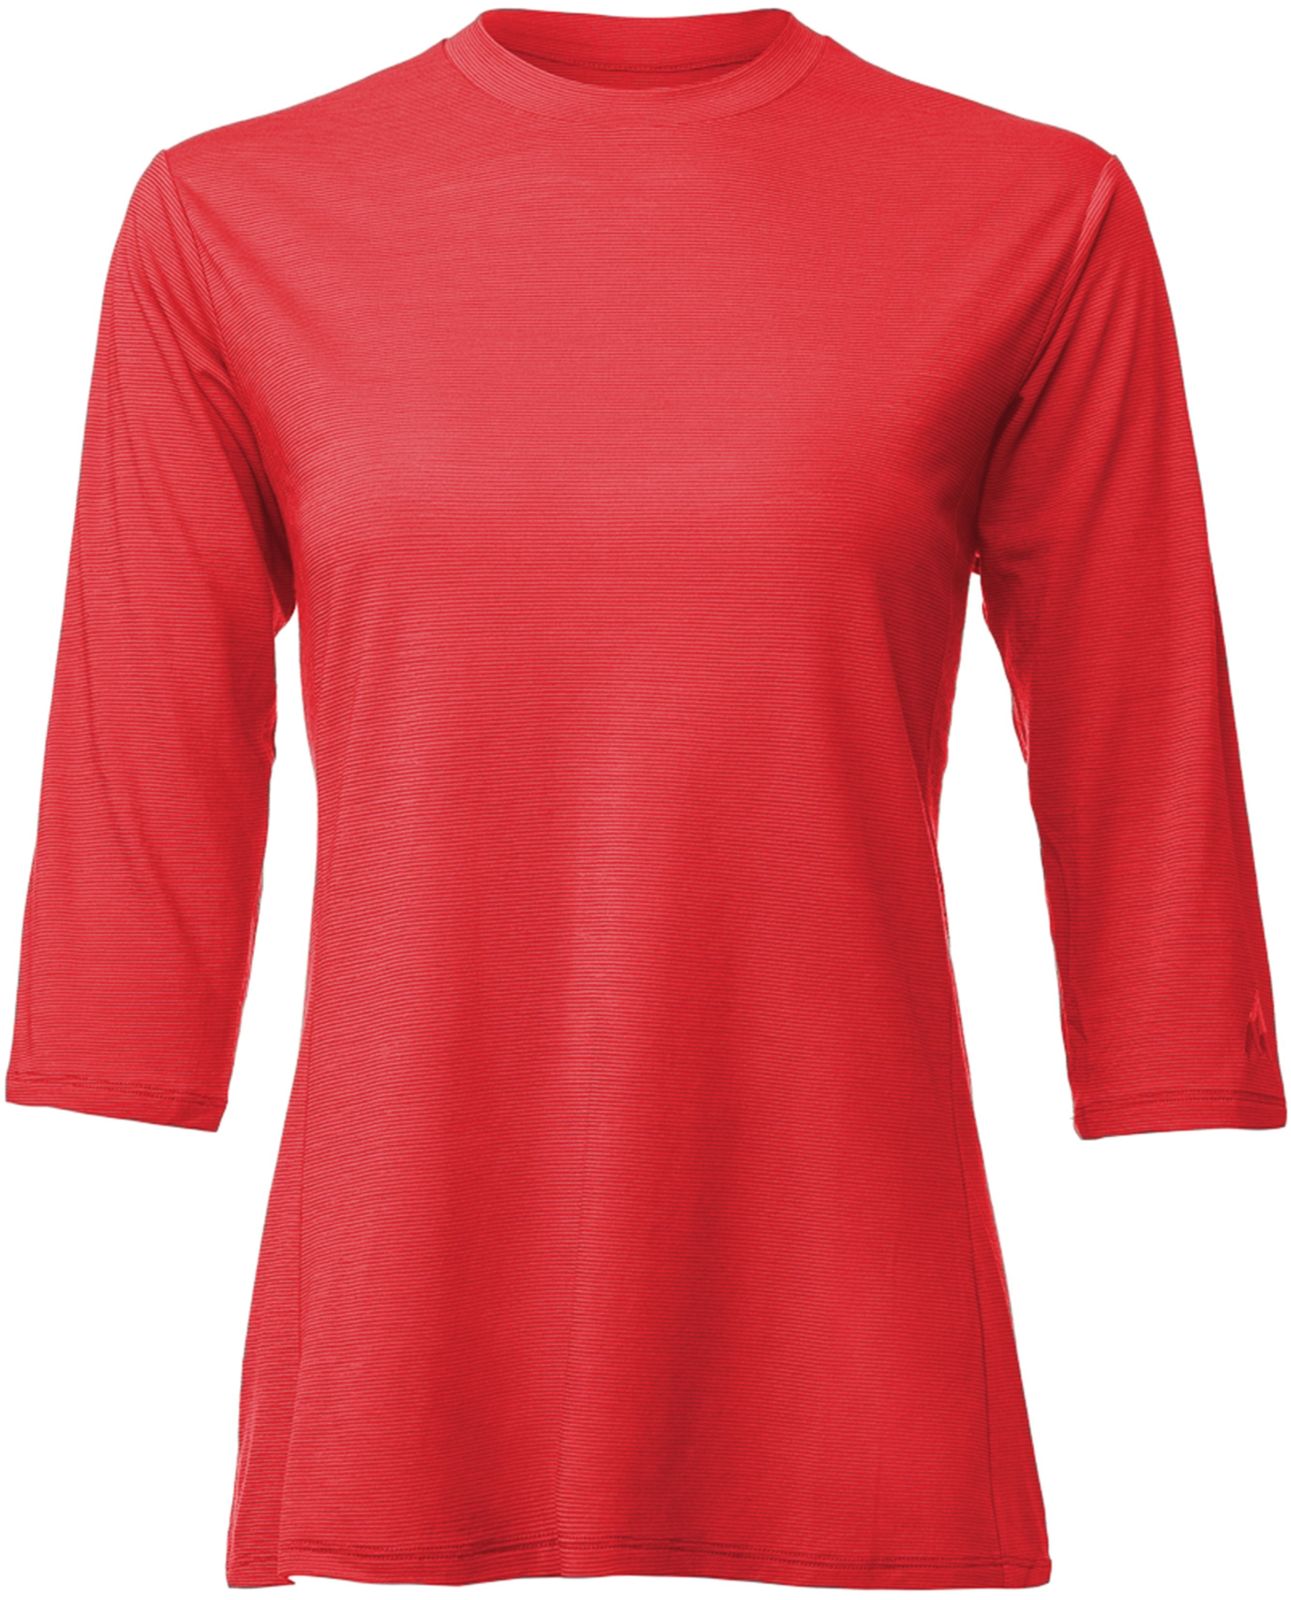 E-shop 7Mesh Desperado Shirt 3/4 Women's - Raspberry M